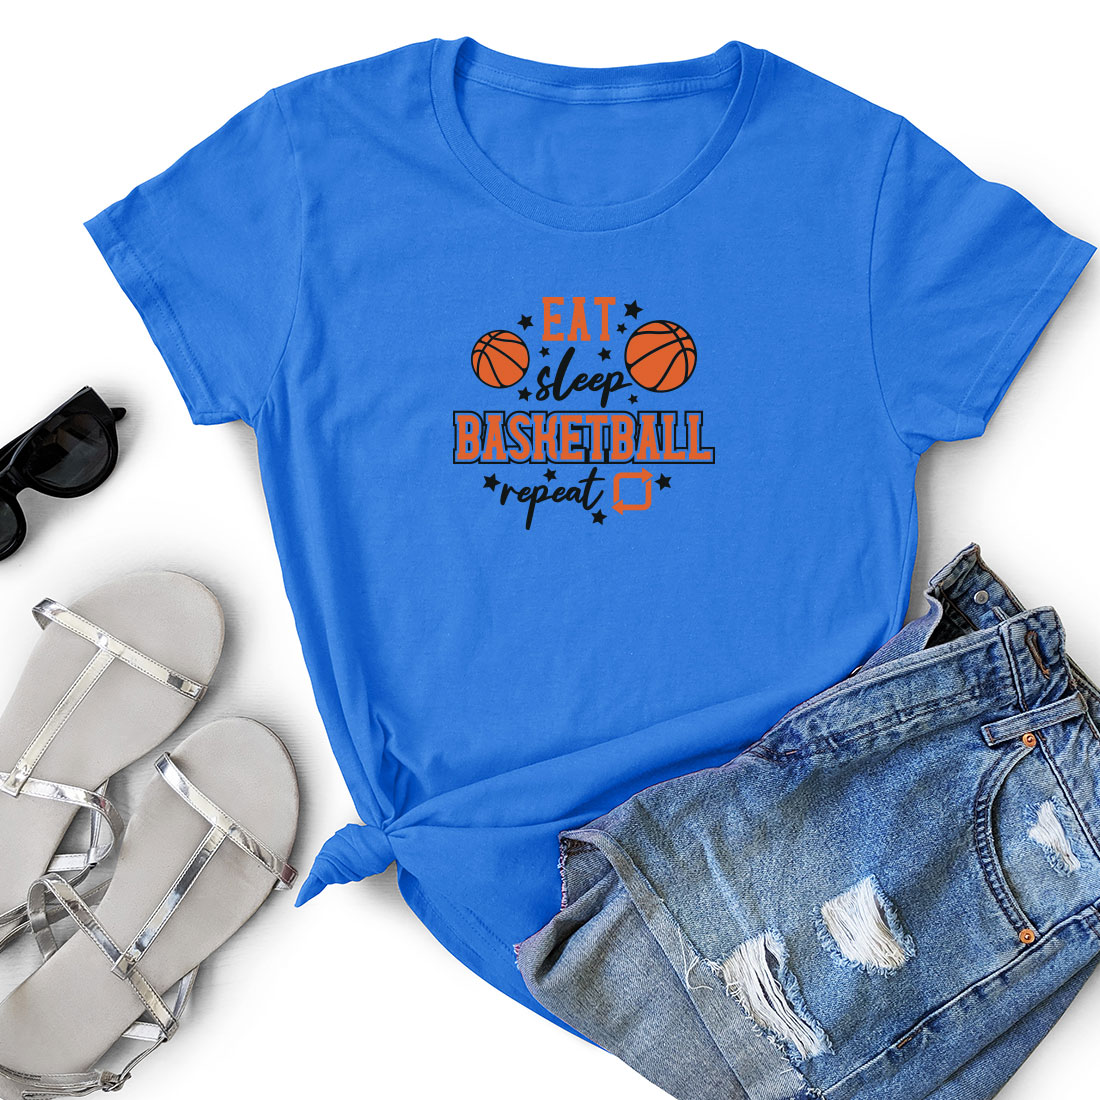 Women's t - shirt with a basketball design.